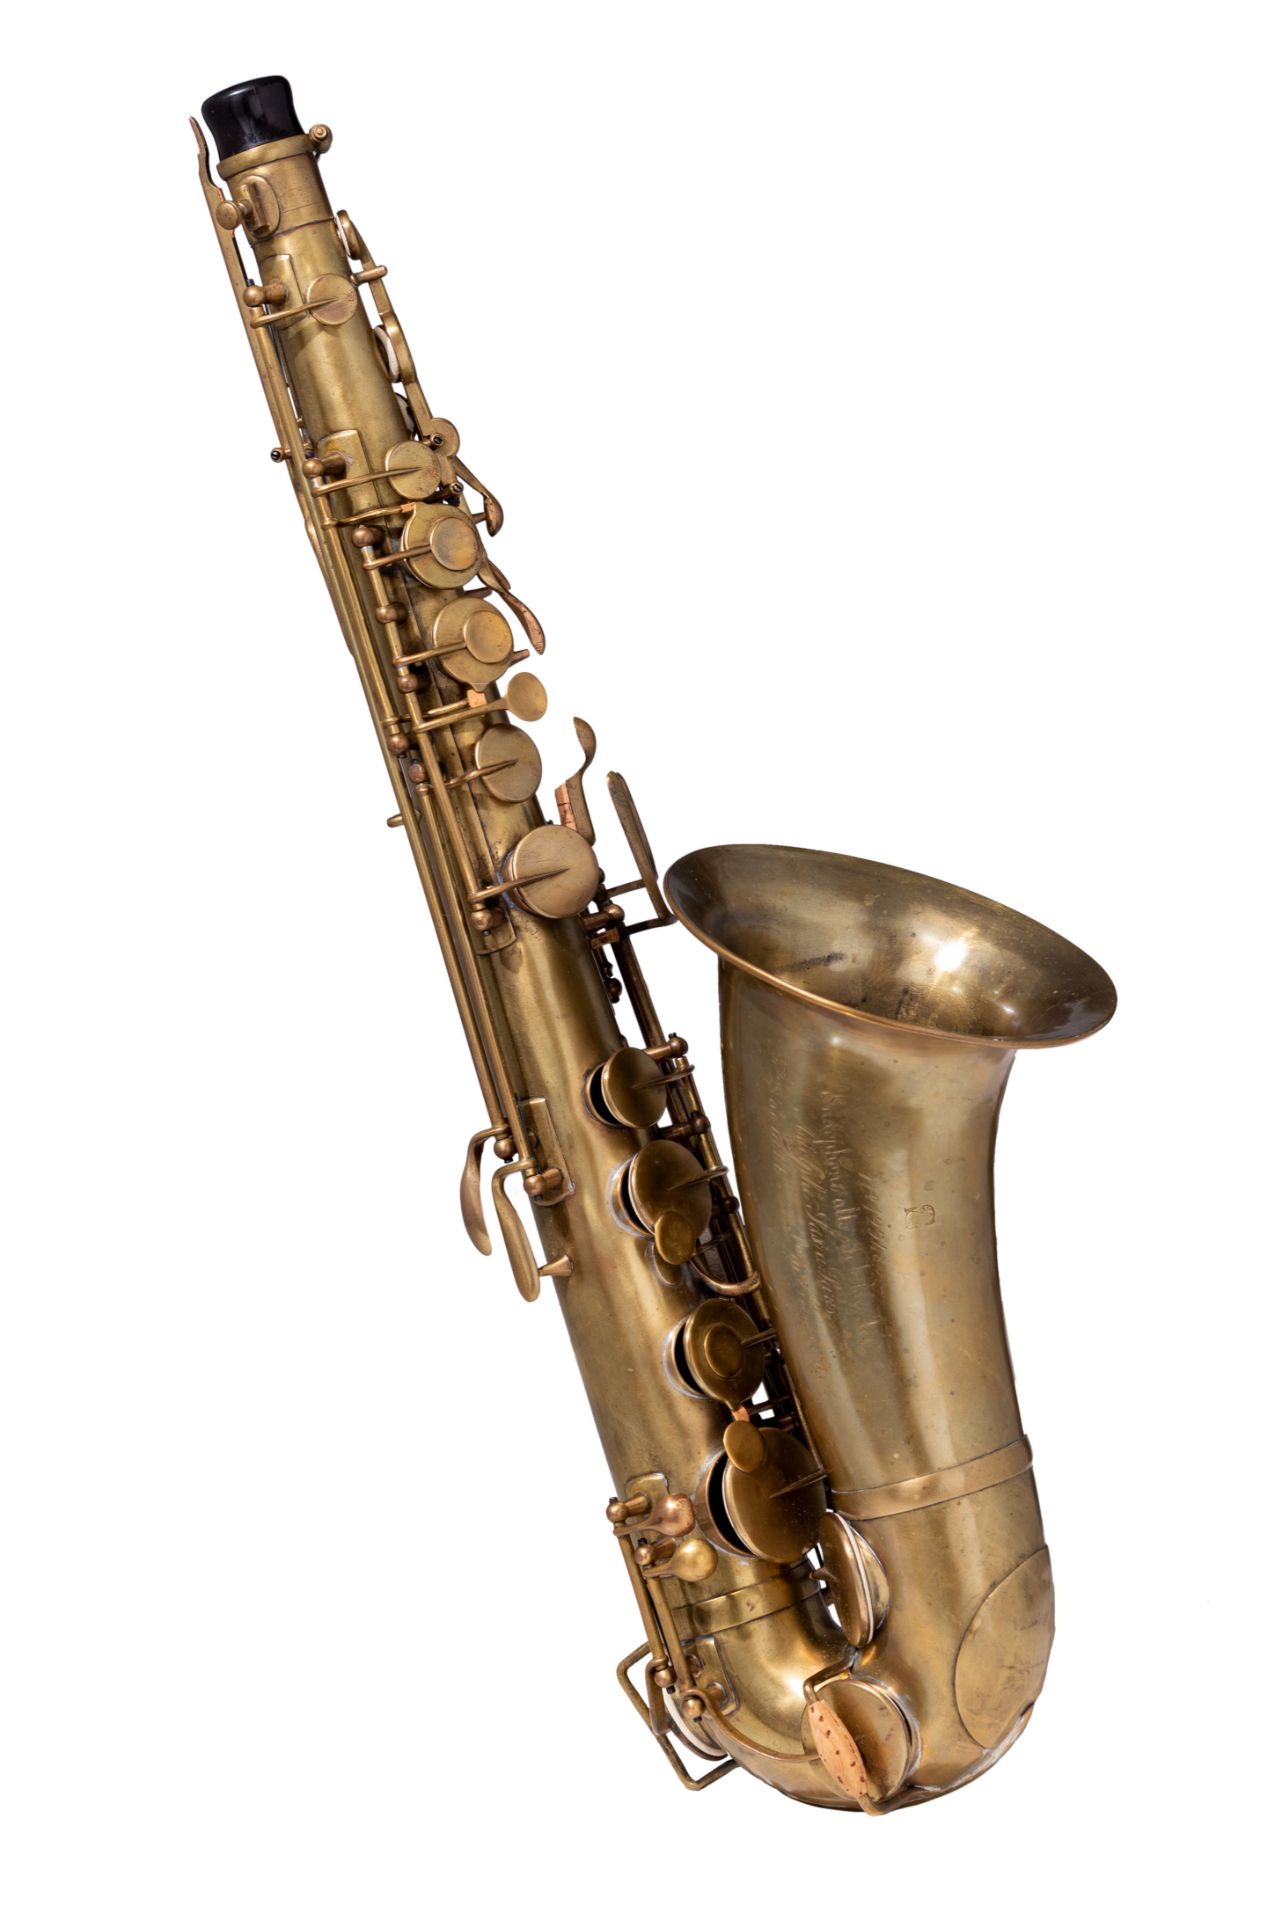 A rare MIB bréveté alto saxophone, serailnr. 12948, date of construction 1855, H 61,5 cm - Image 11 of 54